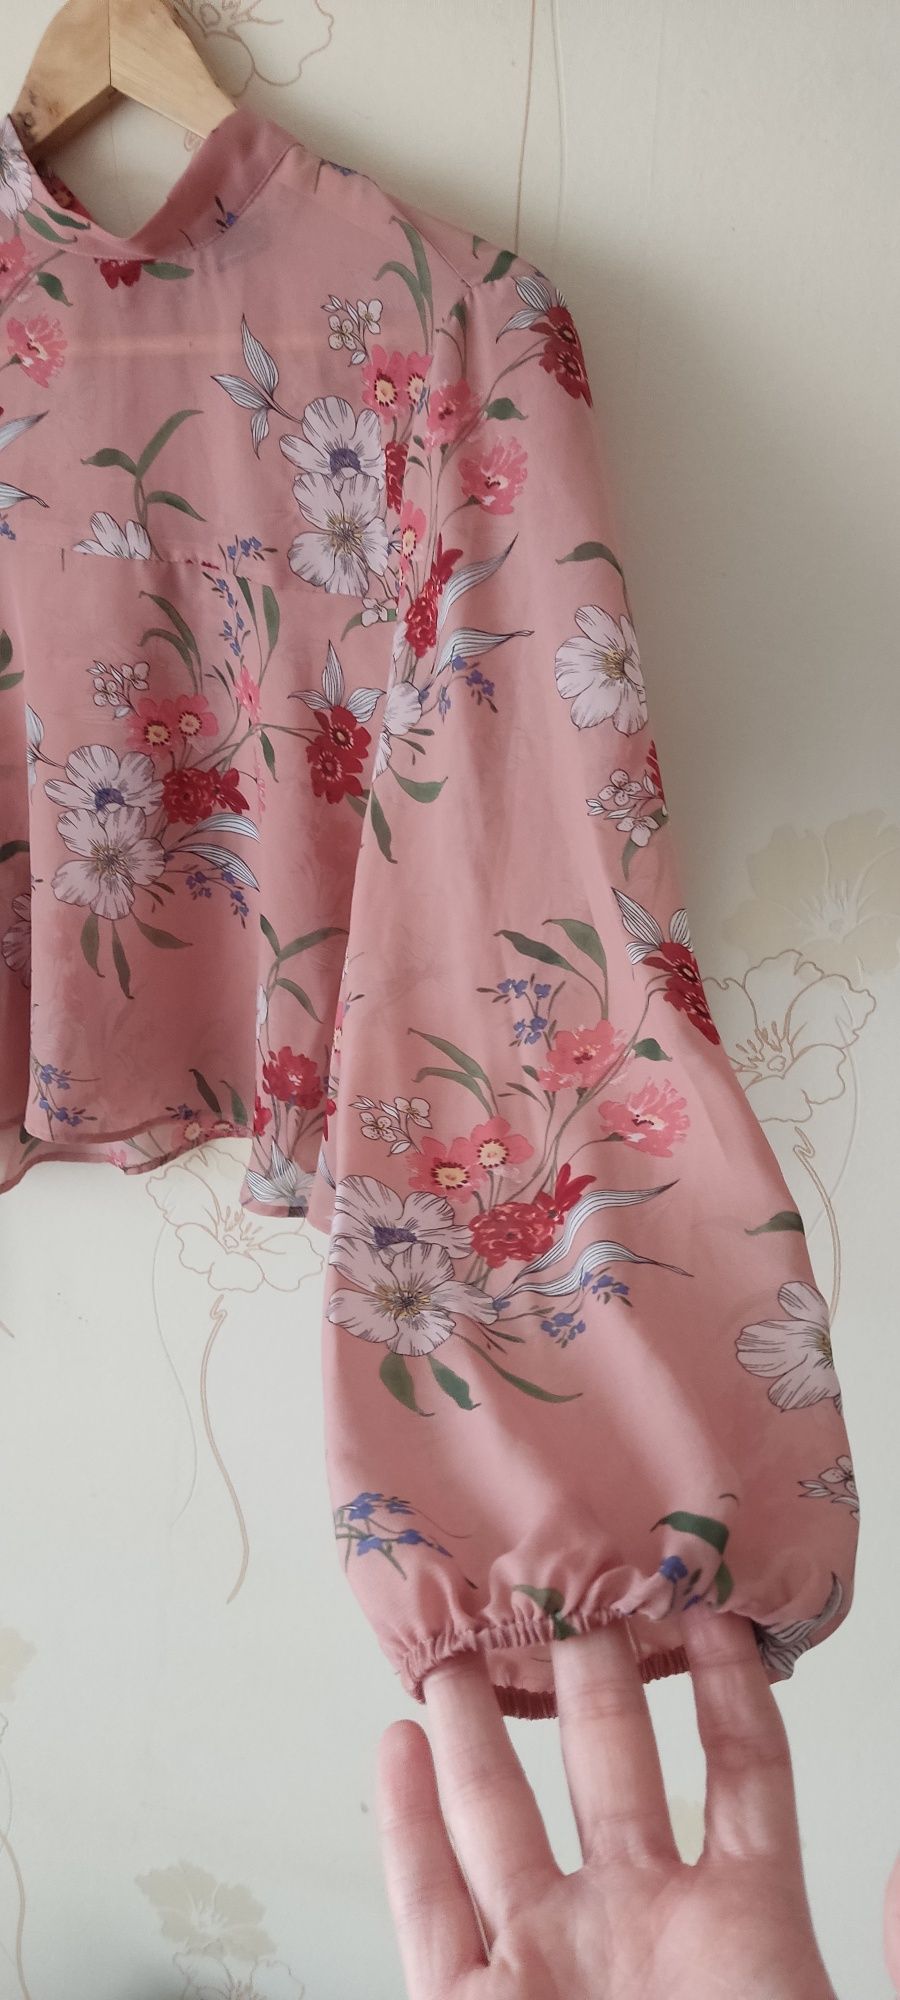 Różowa elegancka bluzka mgiełka w kwiatki w kwiaty ginatricot r. 38